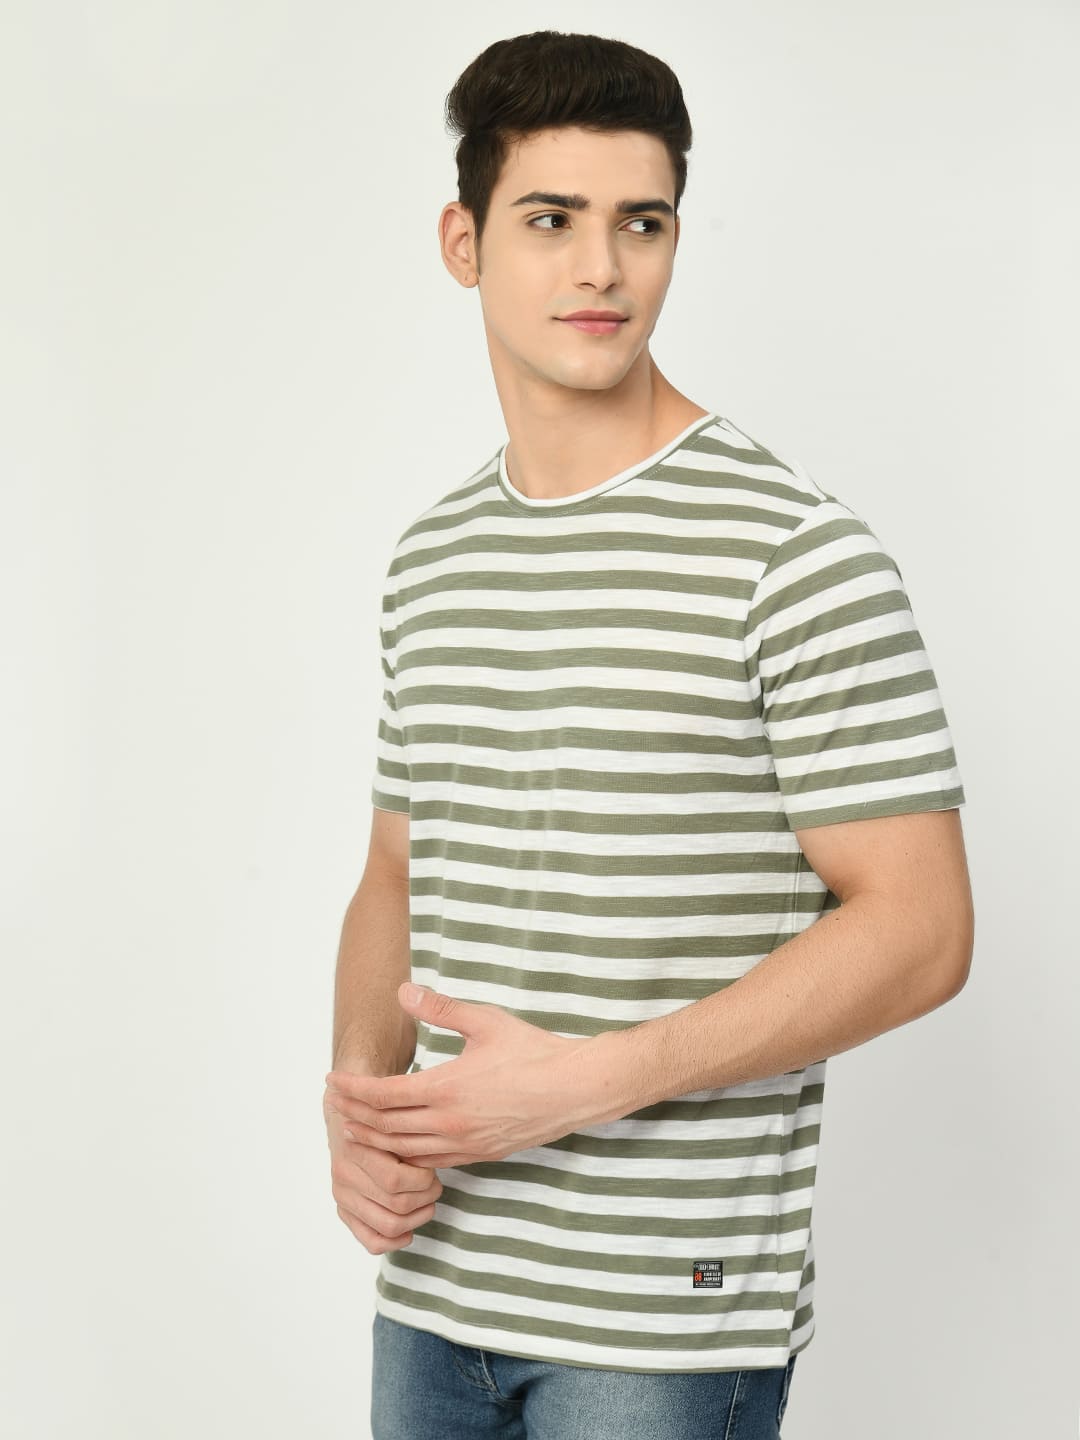 Men's Olive White Striped T-Shirt